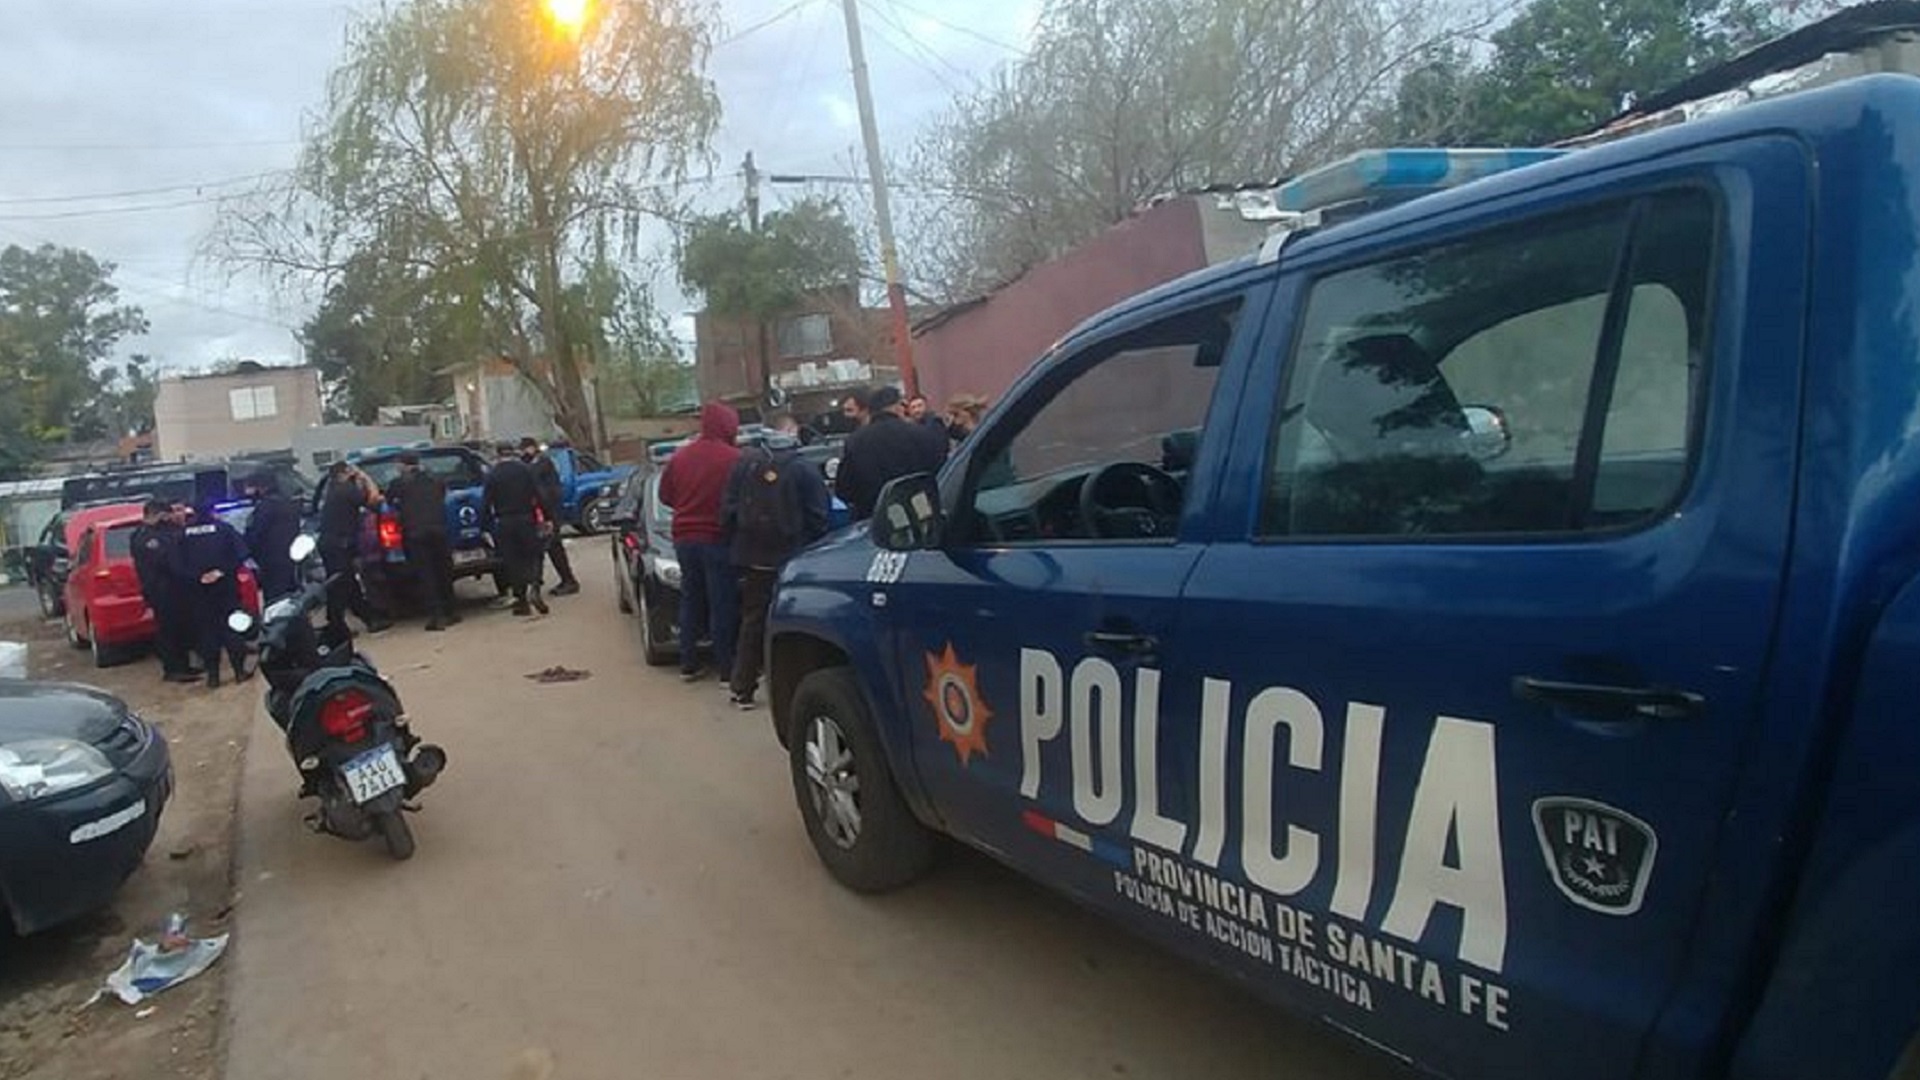 Dos adolescentes fueron asesinados a tiros en la zona norte de Rosario, luego fueron trasladados al Hospital Alberdi, donde fallecieron por múltiples heridas de arma de fuego